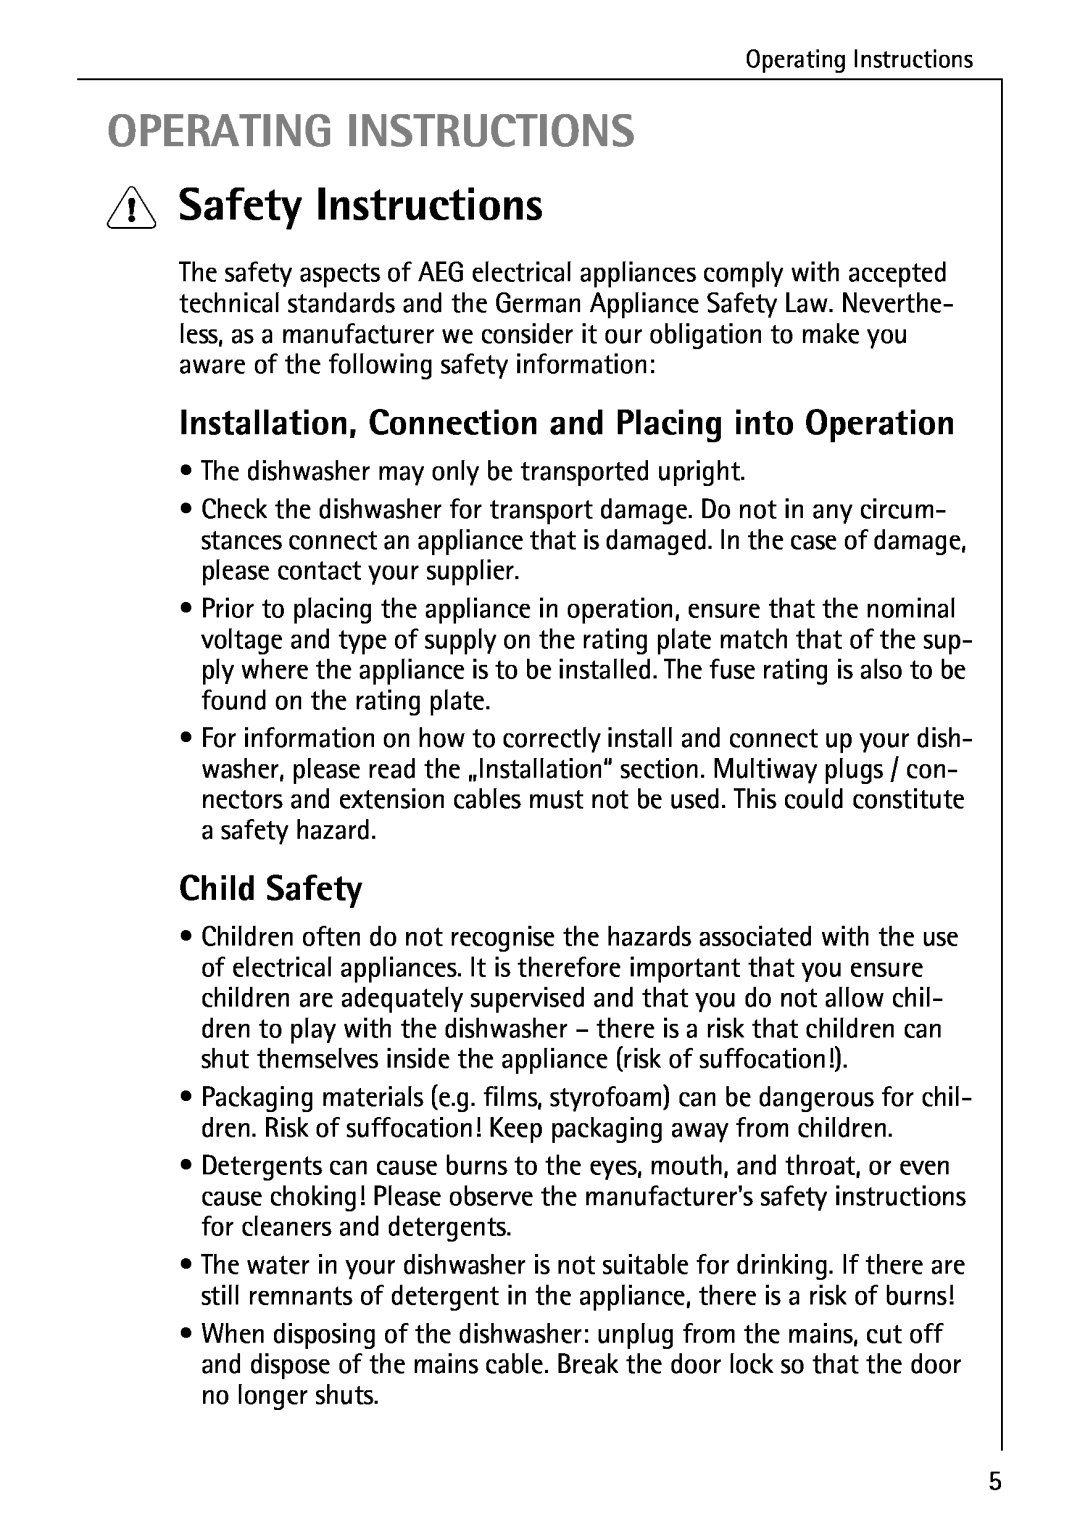 AEG 40360 I manual Operating Instructions, 1Safety Instructions, Child Safety 